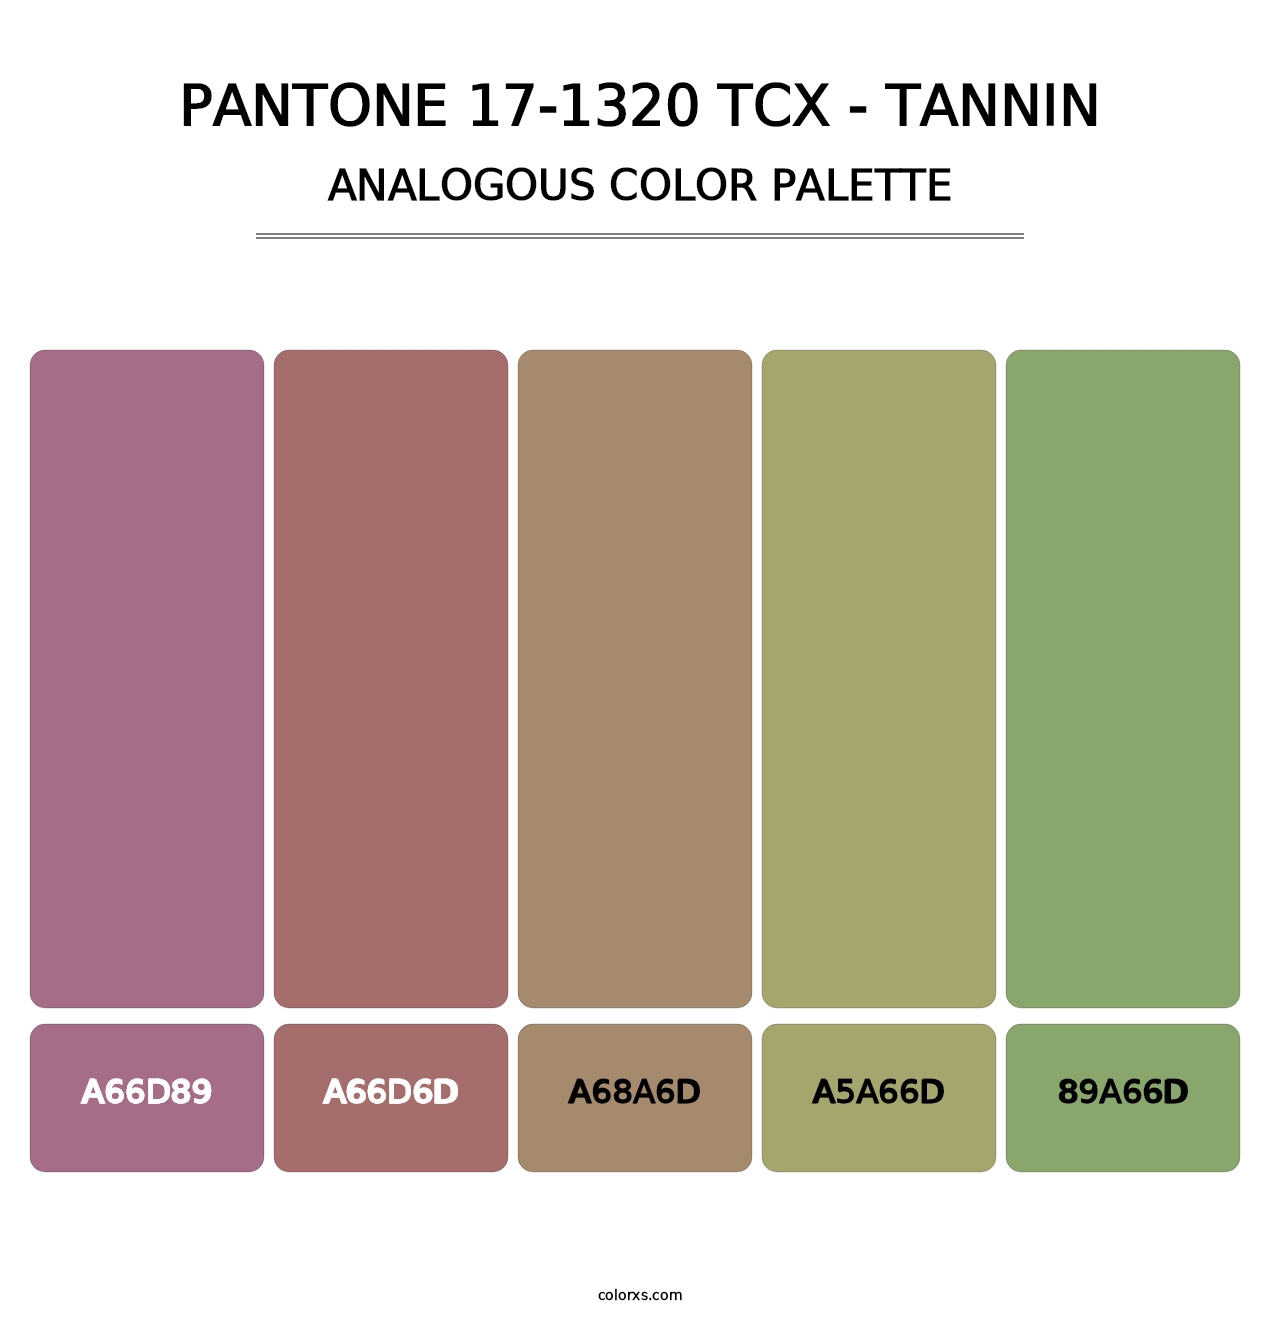 PANTONE 17-1320 TCX - Tannin - Analogous Color Palette